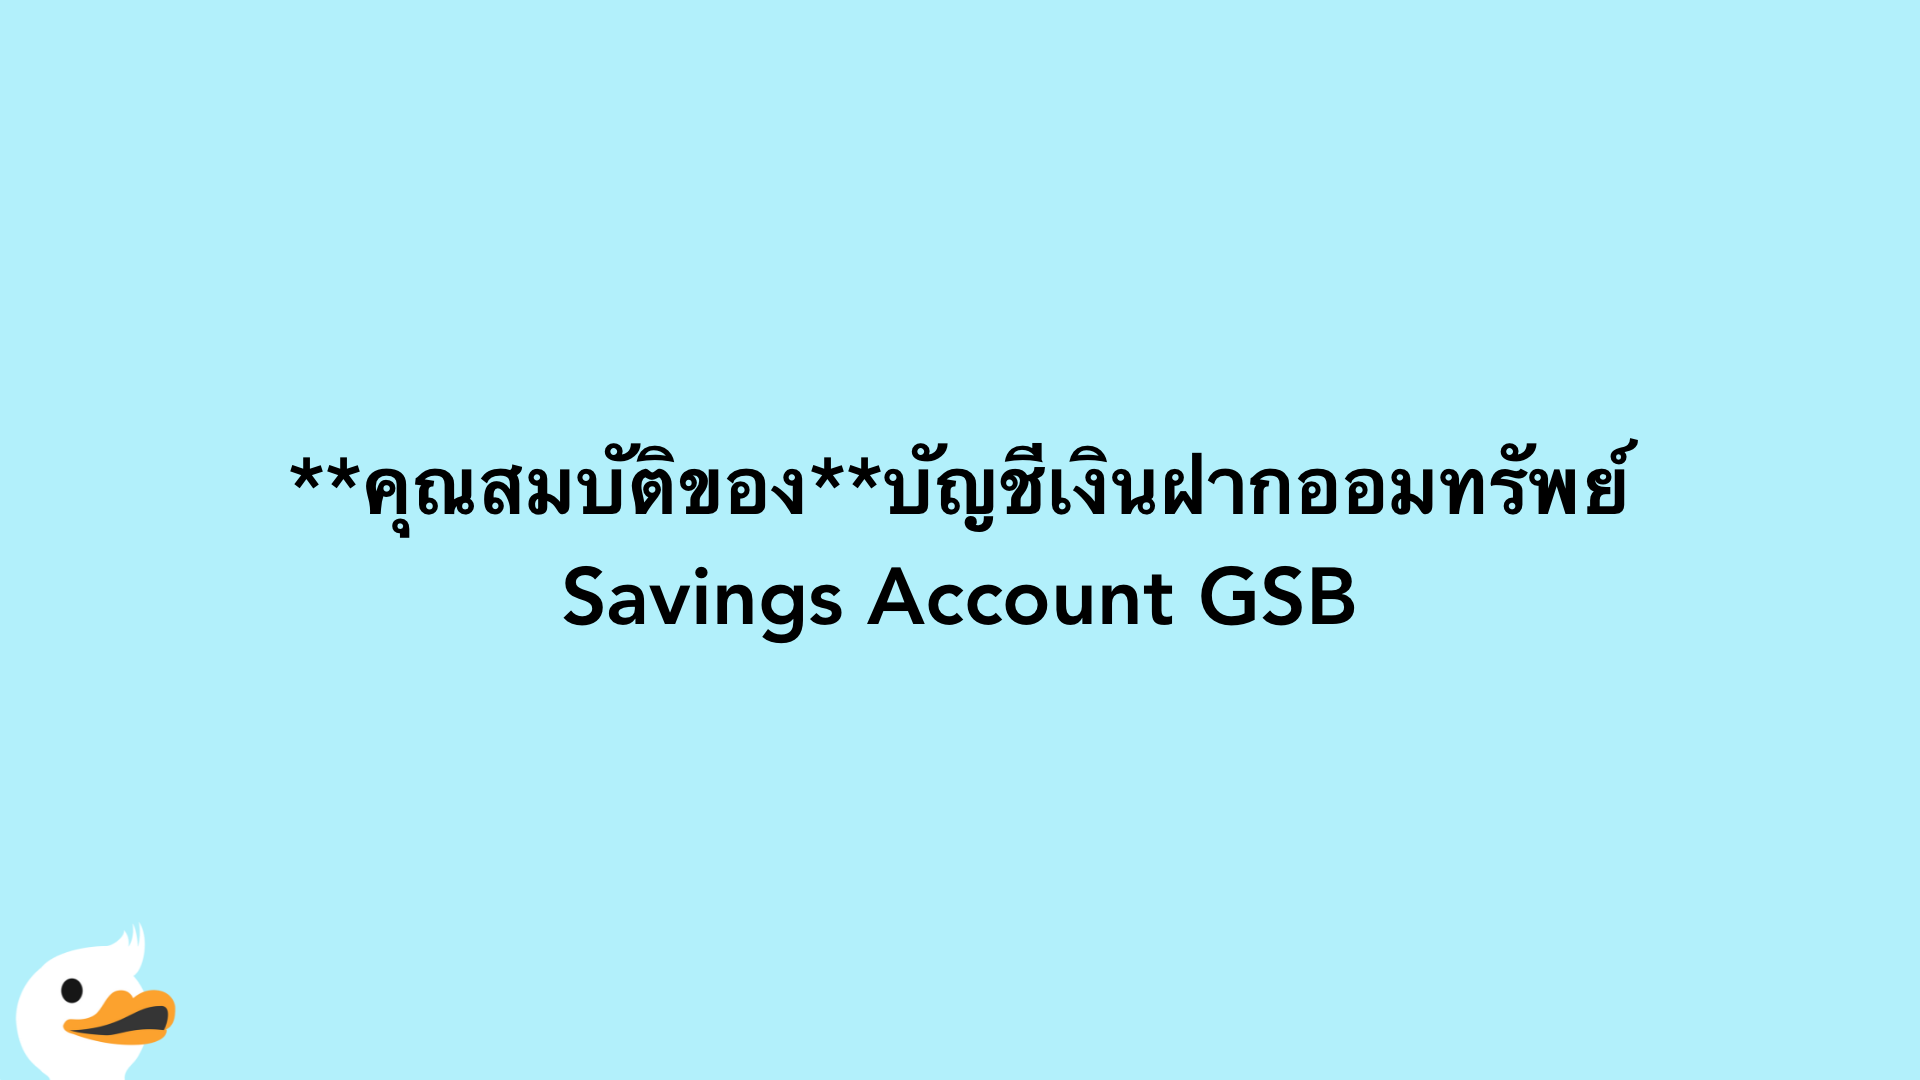 คุณสมบัติของบัญชีเงินฝากออมทรัพย์ Savings Account GSB